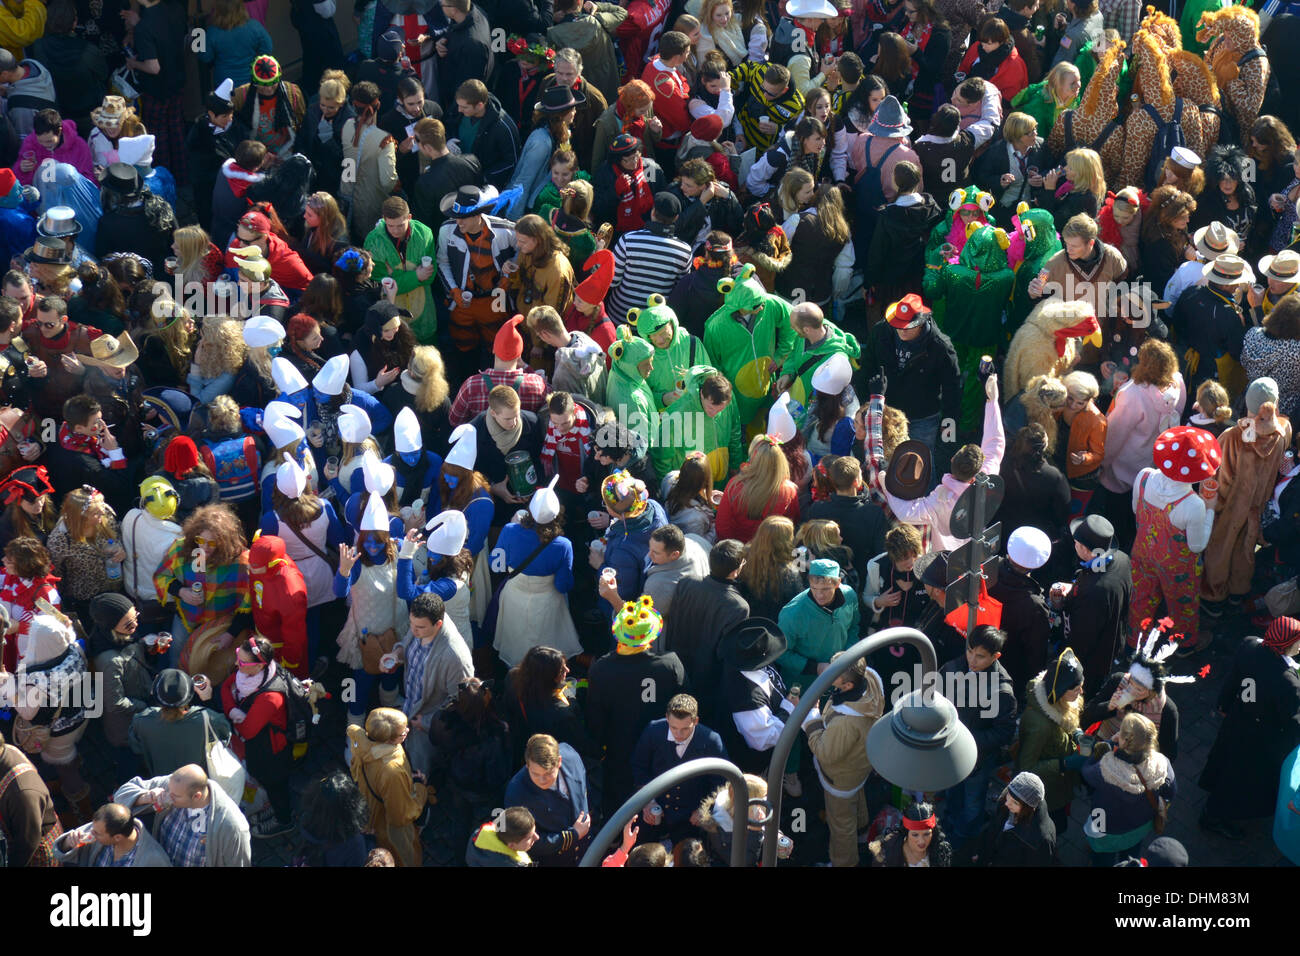 Karneval, im lokalen Dialekt Kölsch "Fastelovend" genannt wird, ist sehr wichtig in Köln. 11:11 am 11. November Stockfoto